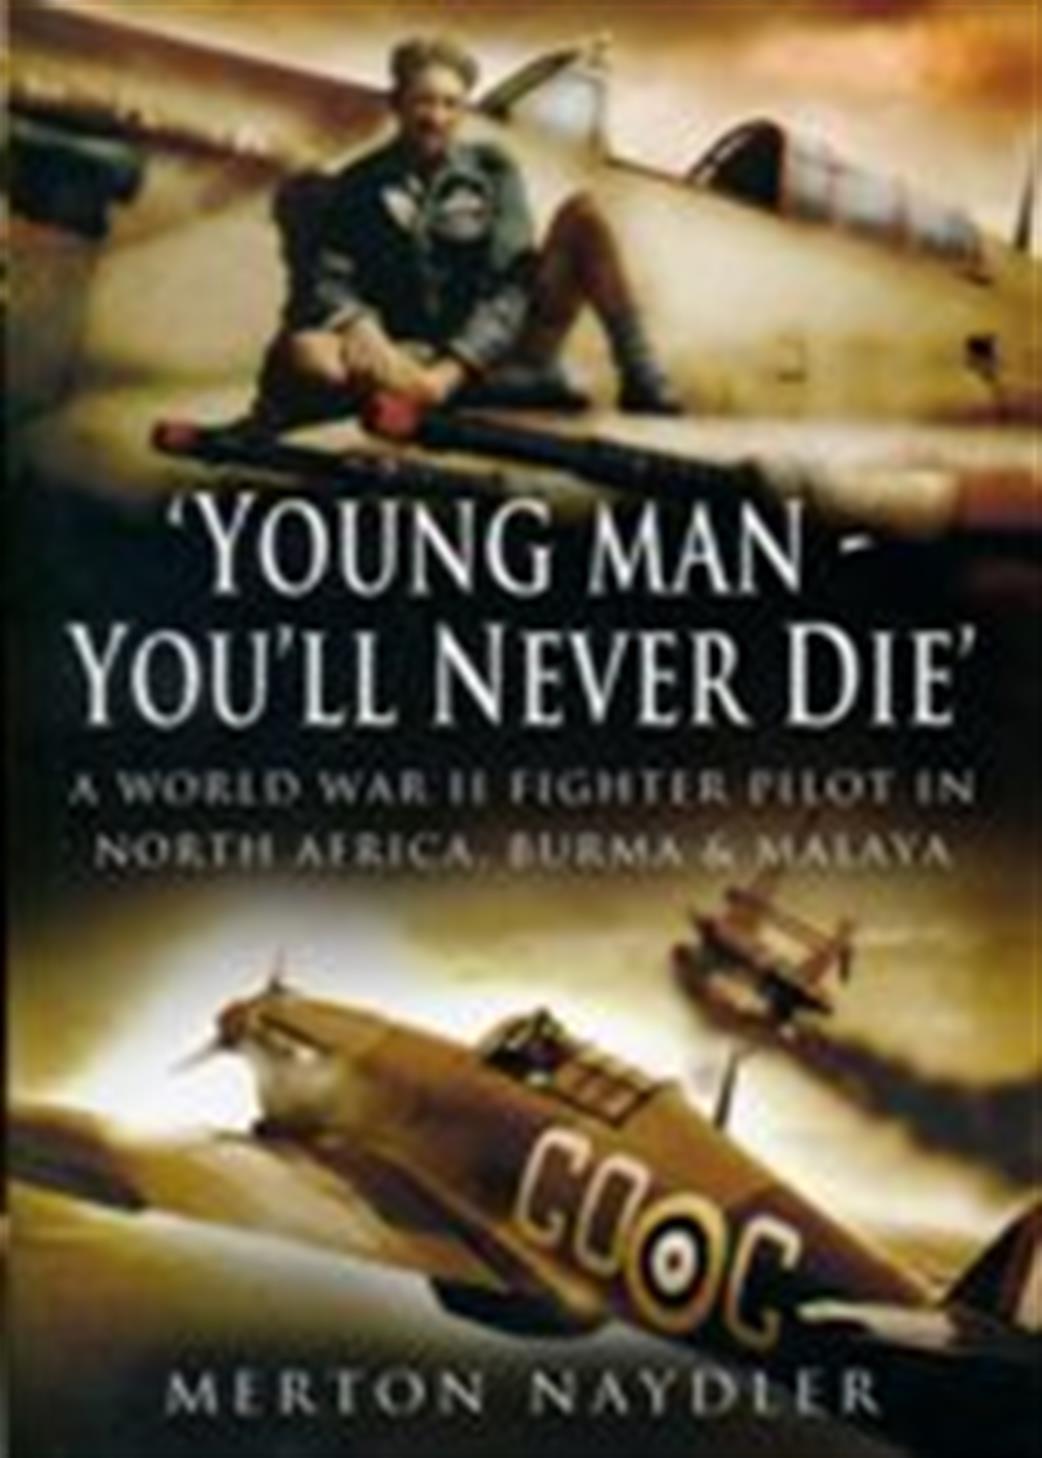 Pen & Sword  1844151603 Yonug Man You'll Never Die by Merton Naydler